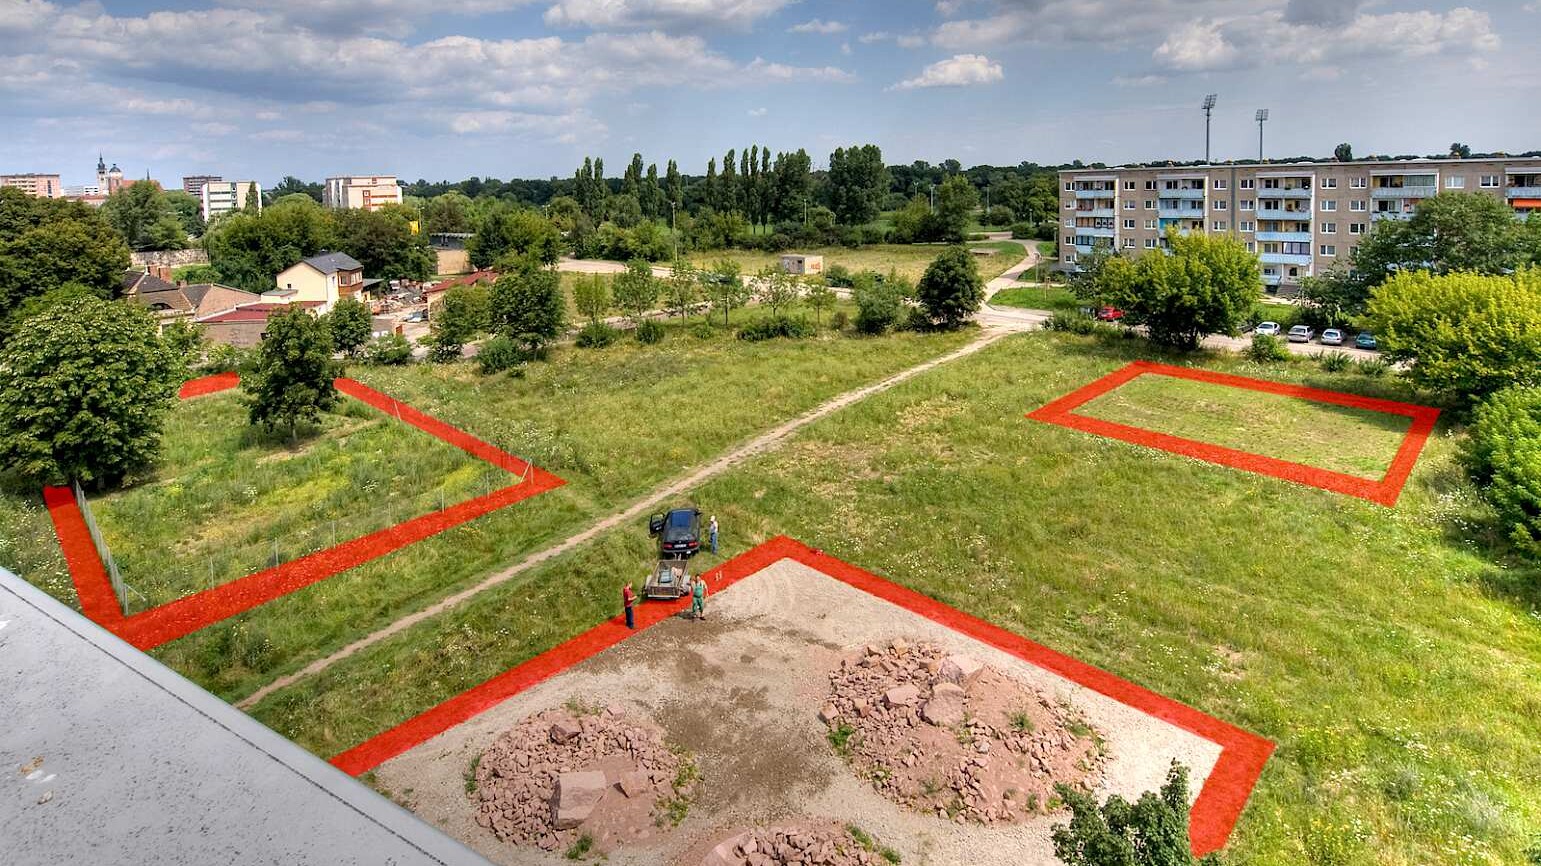 Fotomontage mit drei mit roter Farbe abgeteilten quadratischen Abschnitten einer Rasenfläche